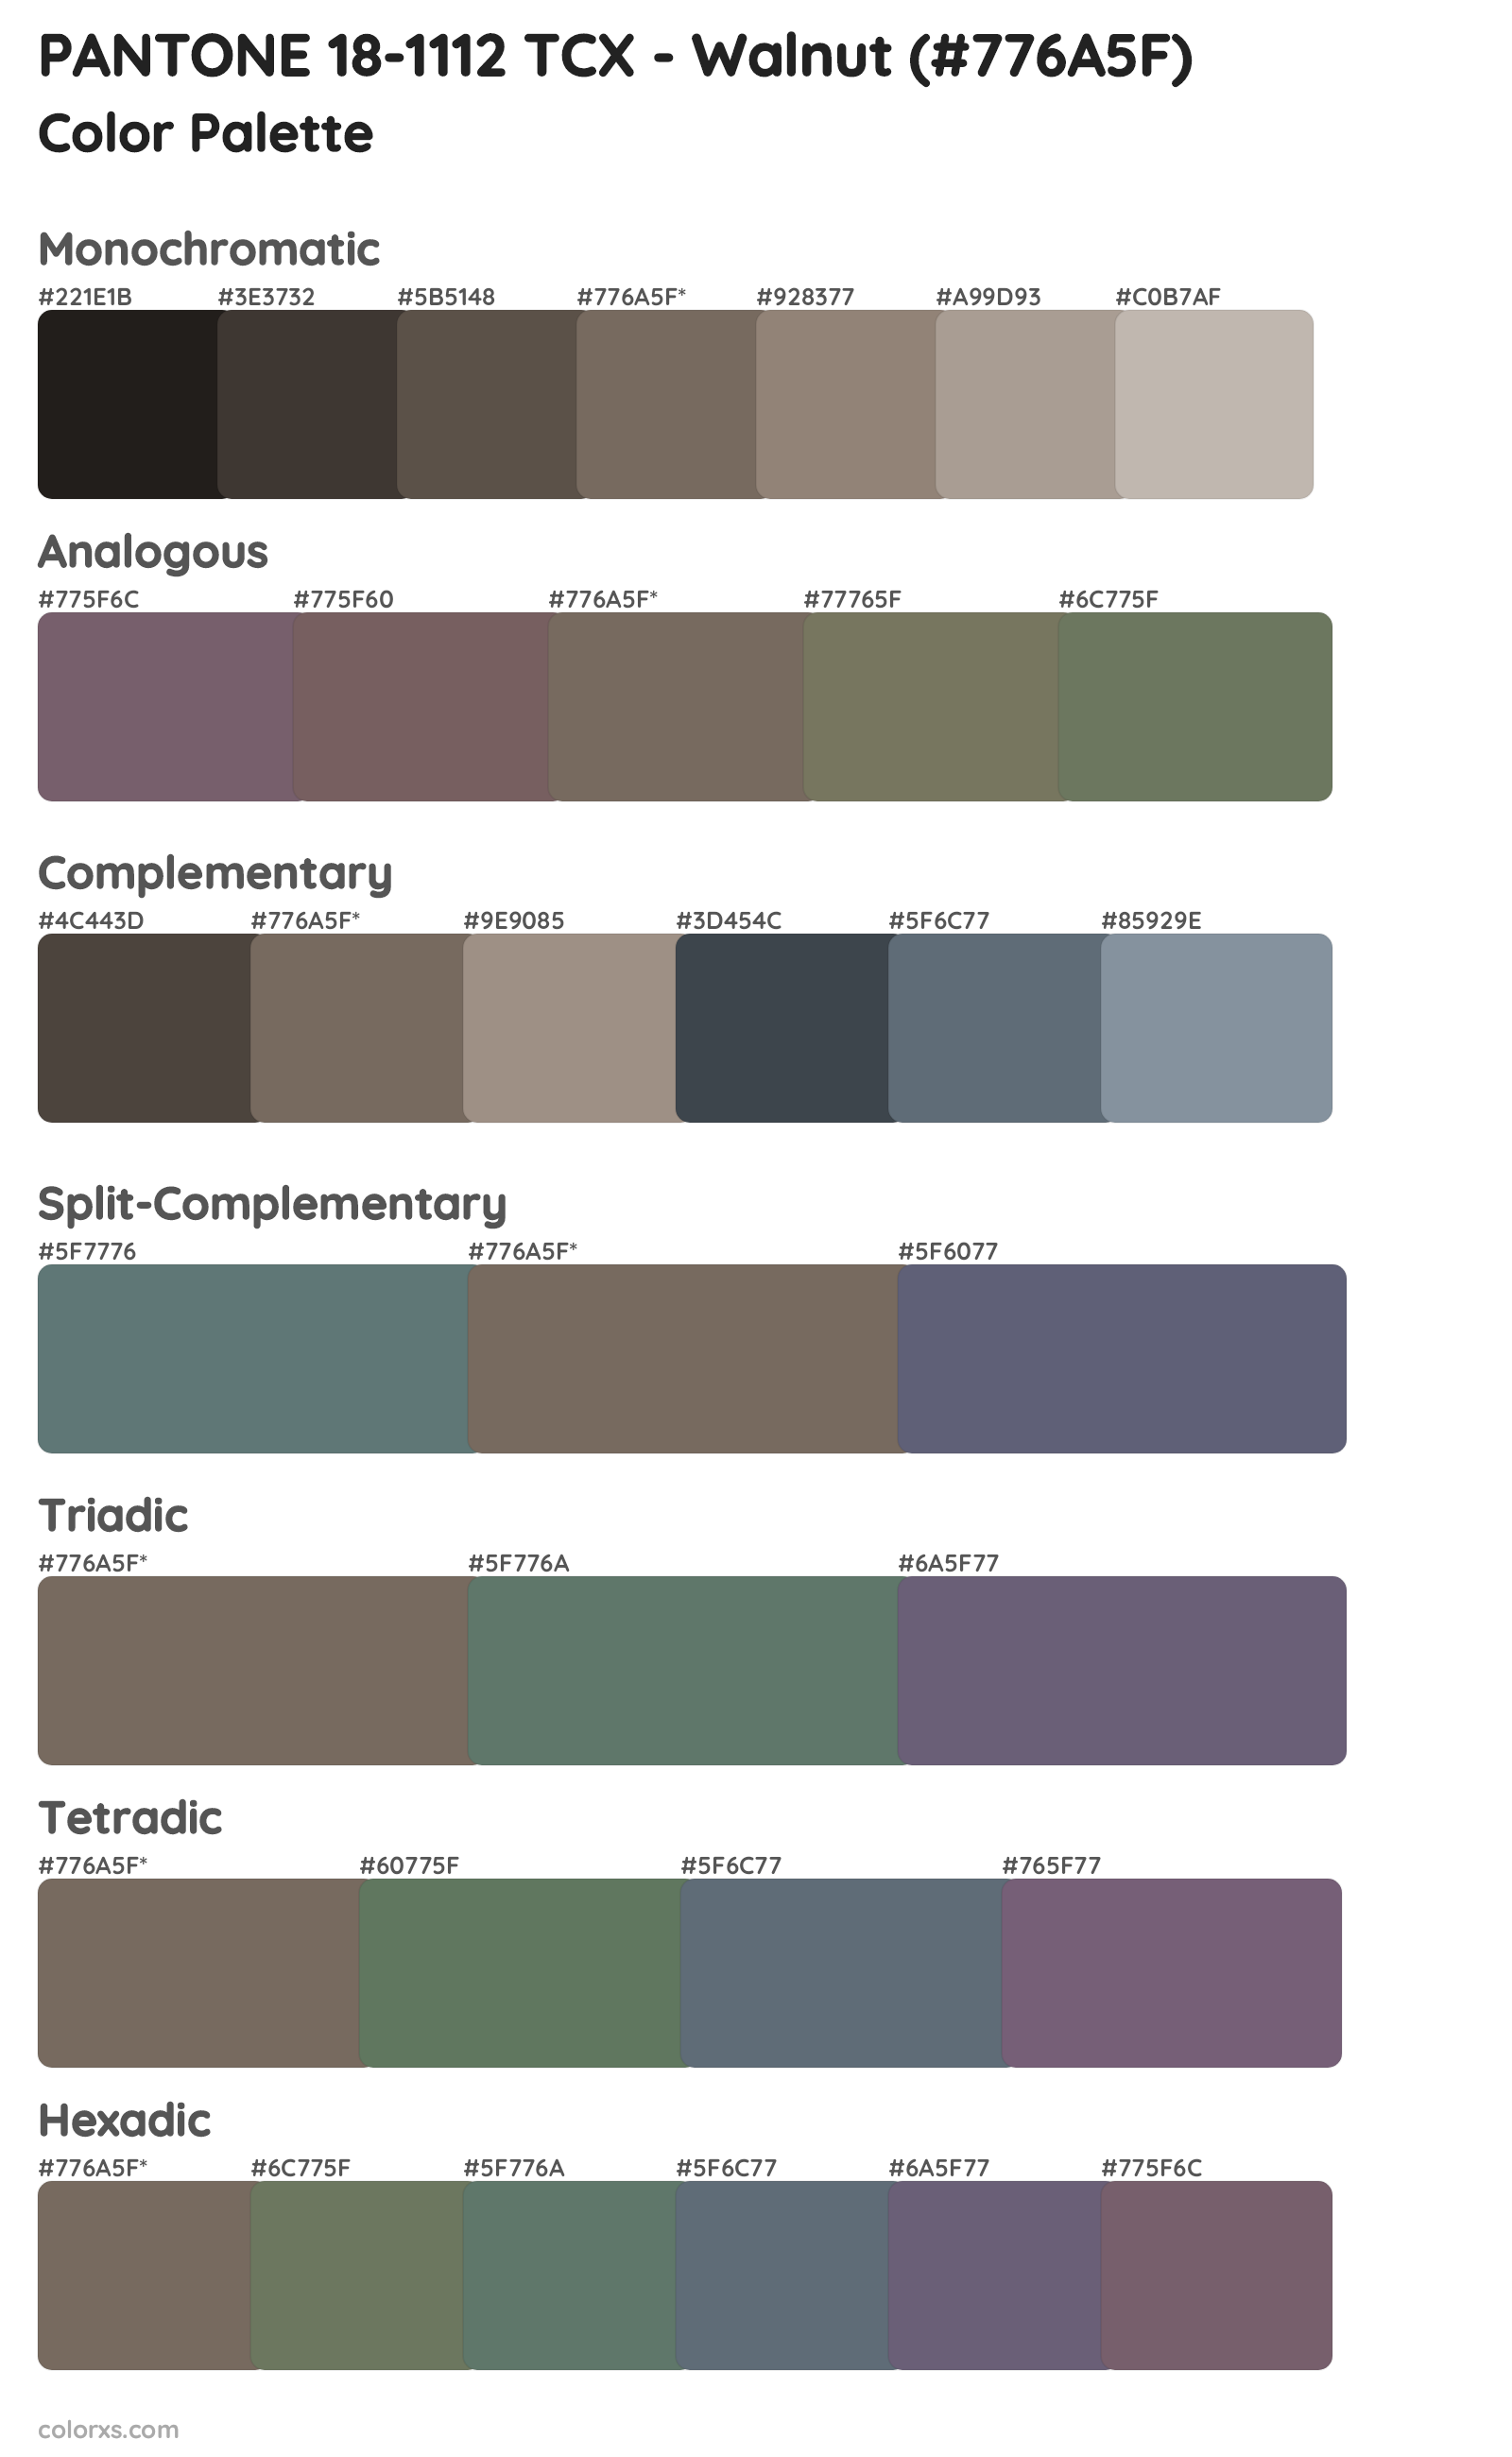 PANTONE 18-1112 TCX - Walnut Color Scheme Palettes